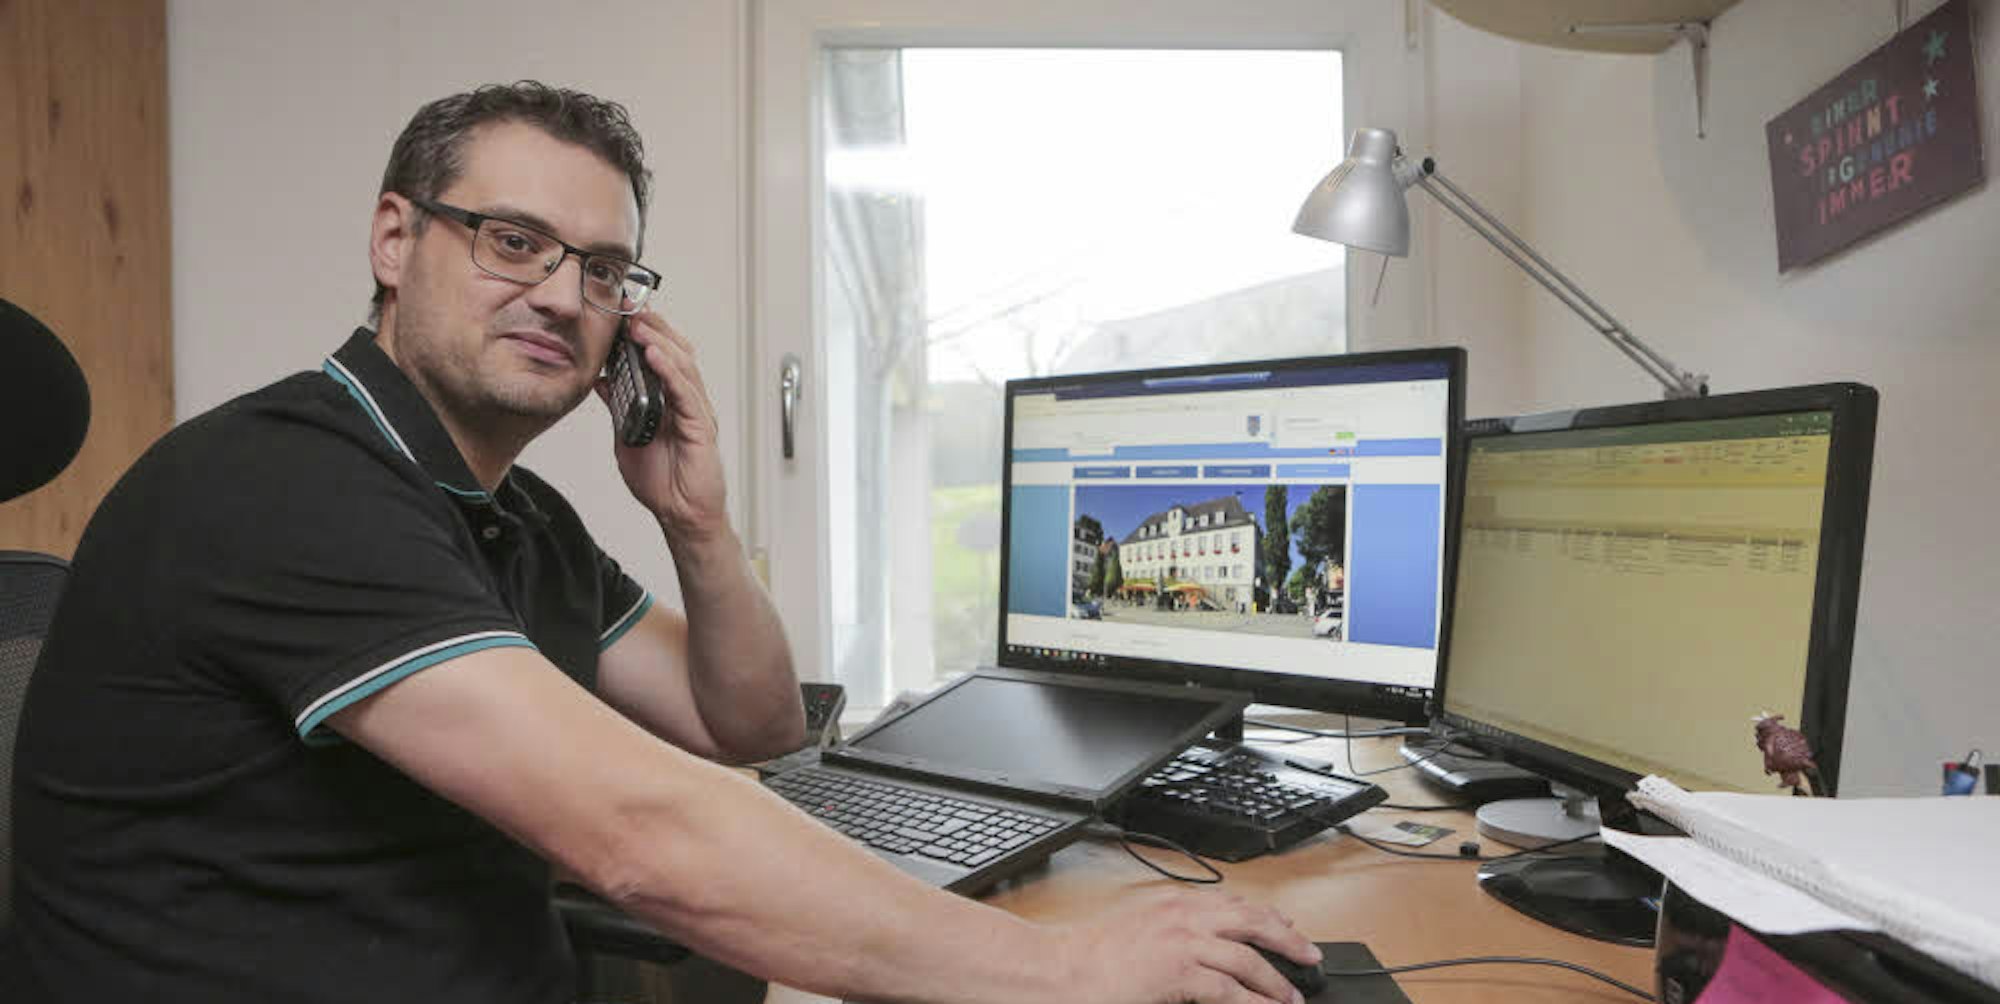 Flexibel: Wenn Thorsten Stefer einen Home-Office-Day hat, kann er mit seinem Dienst-Laptop von Zuhause aus arbeiten.